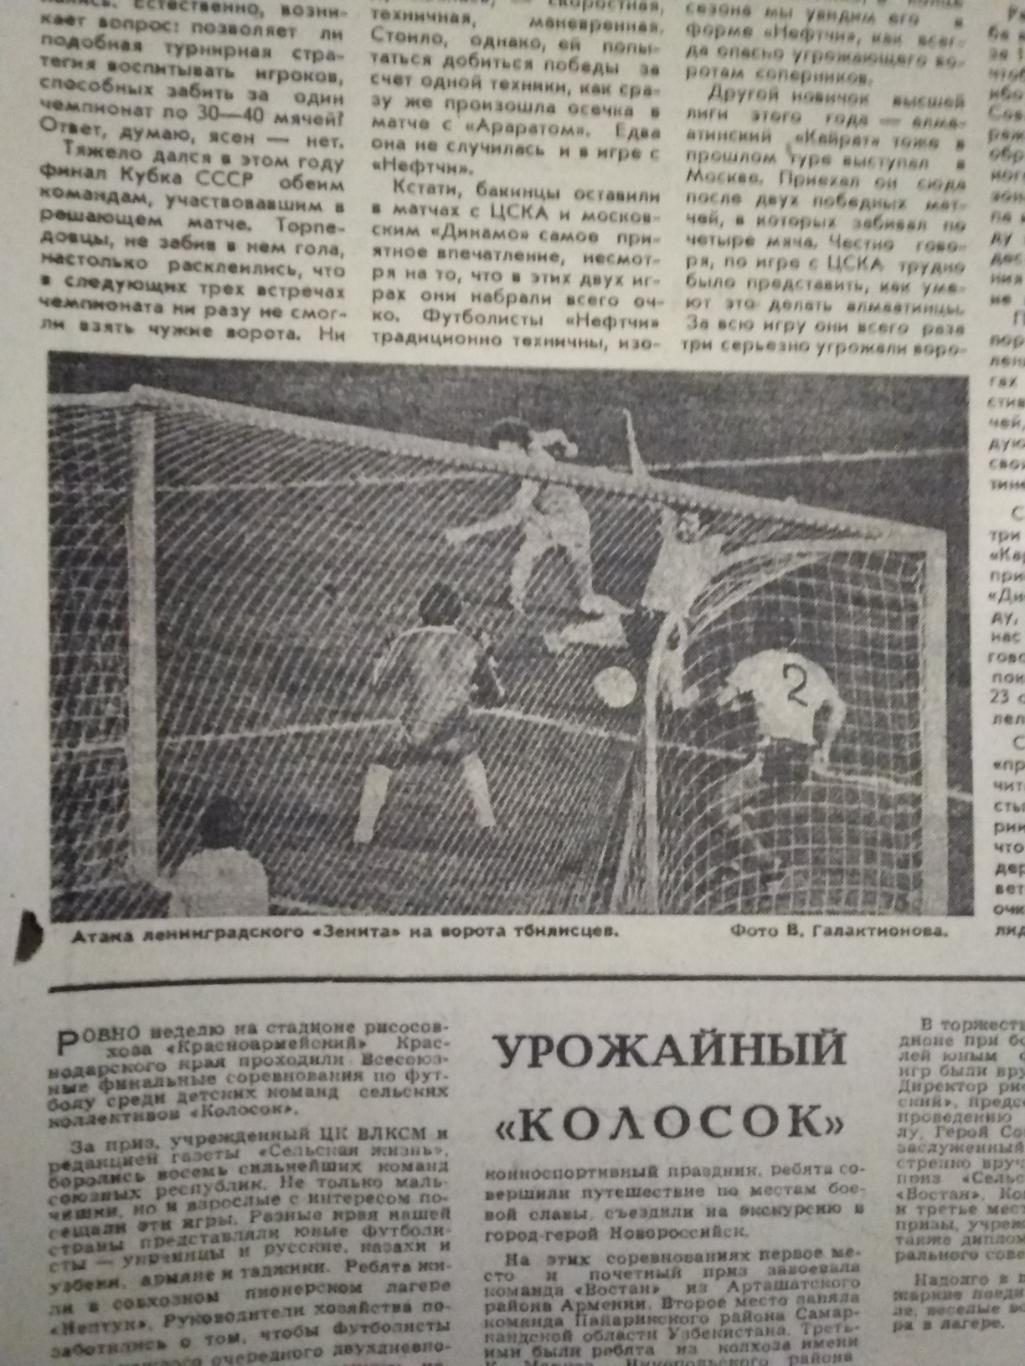 Статья.Футбол.Арарат (Ереван).Футбол-Хоккей 1977 г. 1